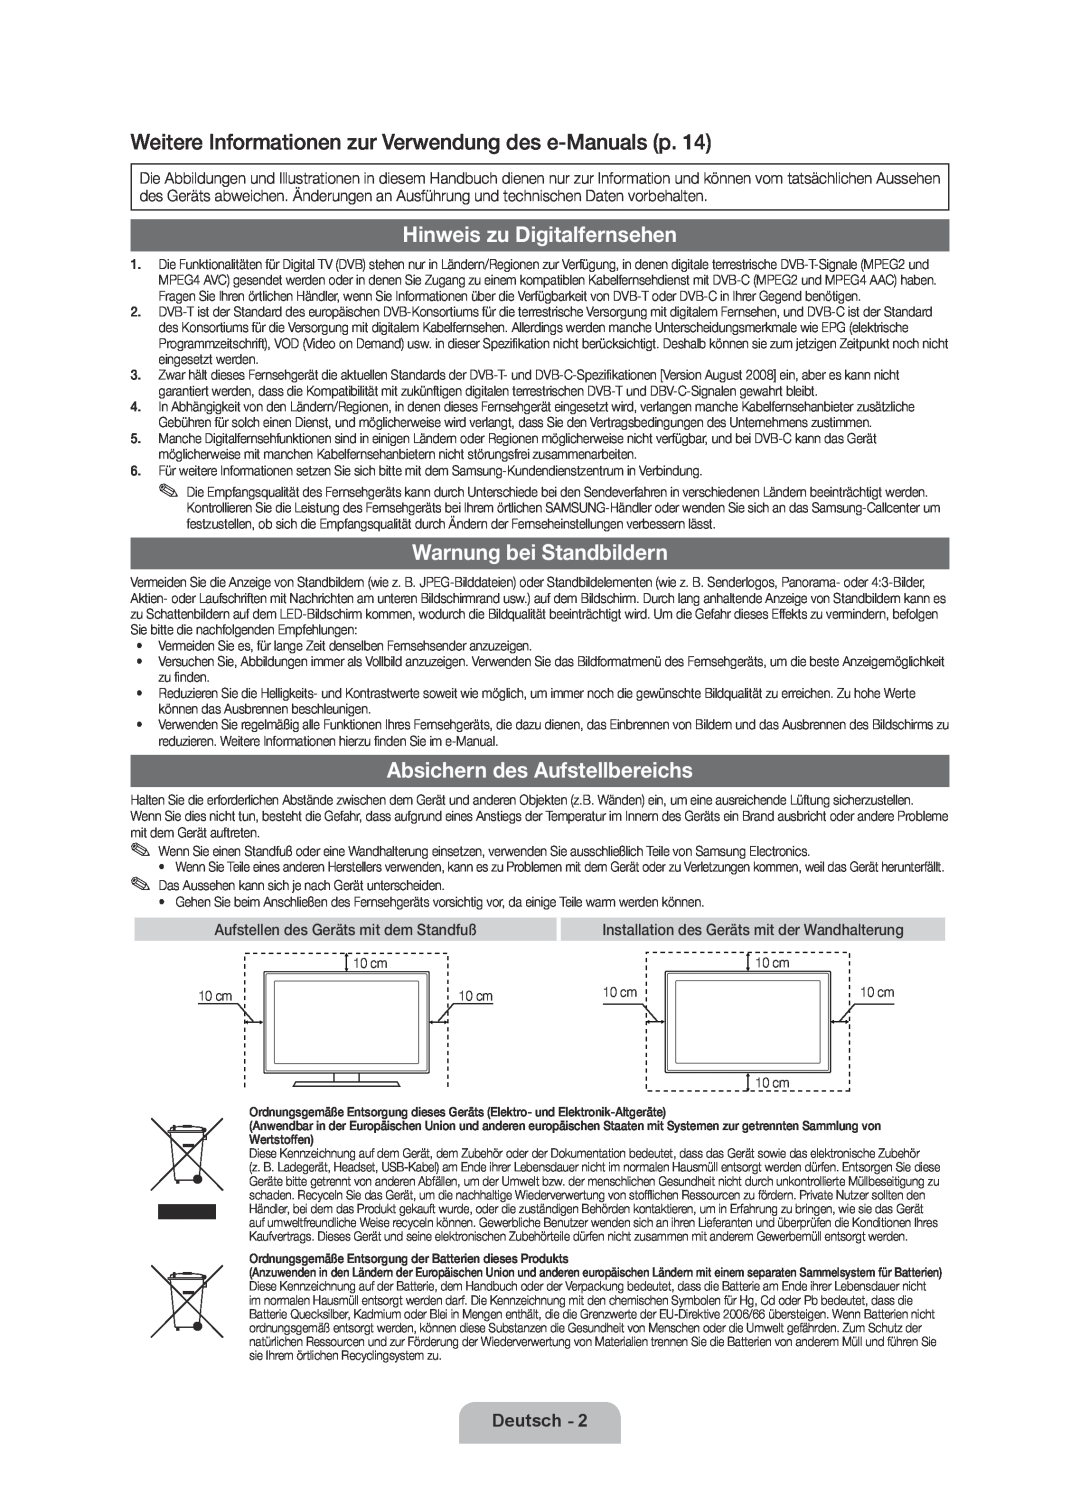 Samsung UE32D6000TPXZT manual Weitere Informationen zur Verwendung des e-Manuals p, Hinweis zu Digitalfernsehen, Deutsch 